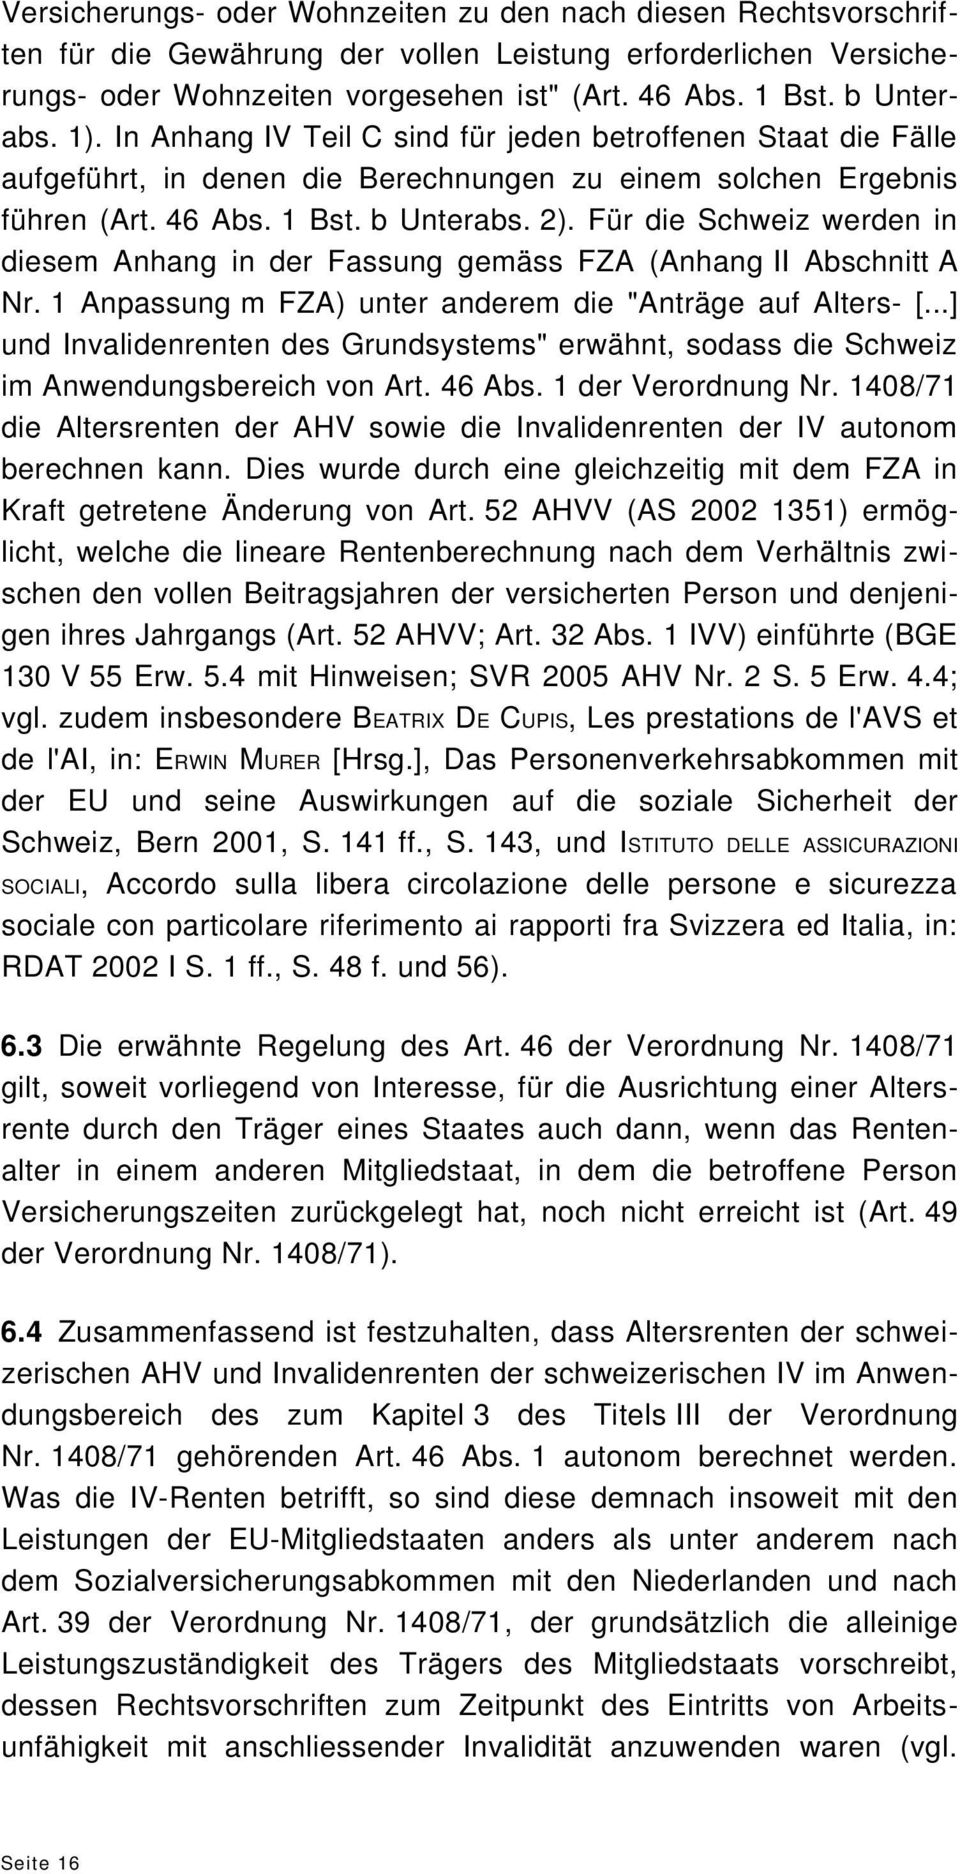 Für die Schweiz werden in diesem Anhang in der Fassung gemäss FZA (Anhang II Abschnitt A Nr. 1 Anpassung m FZA) unter anderem die "Anträge auf Alters- [.